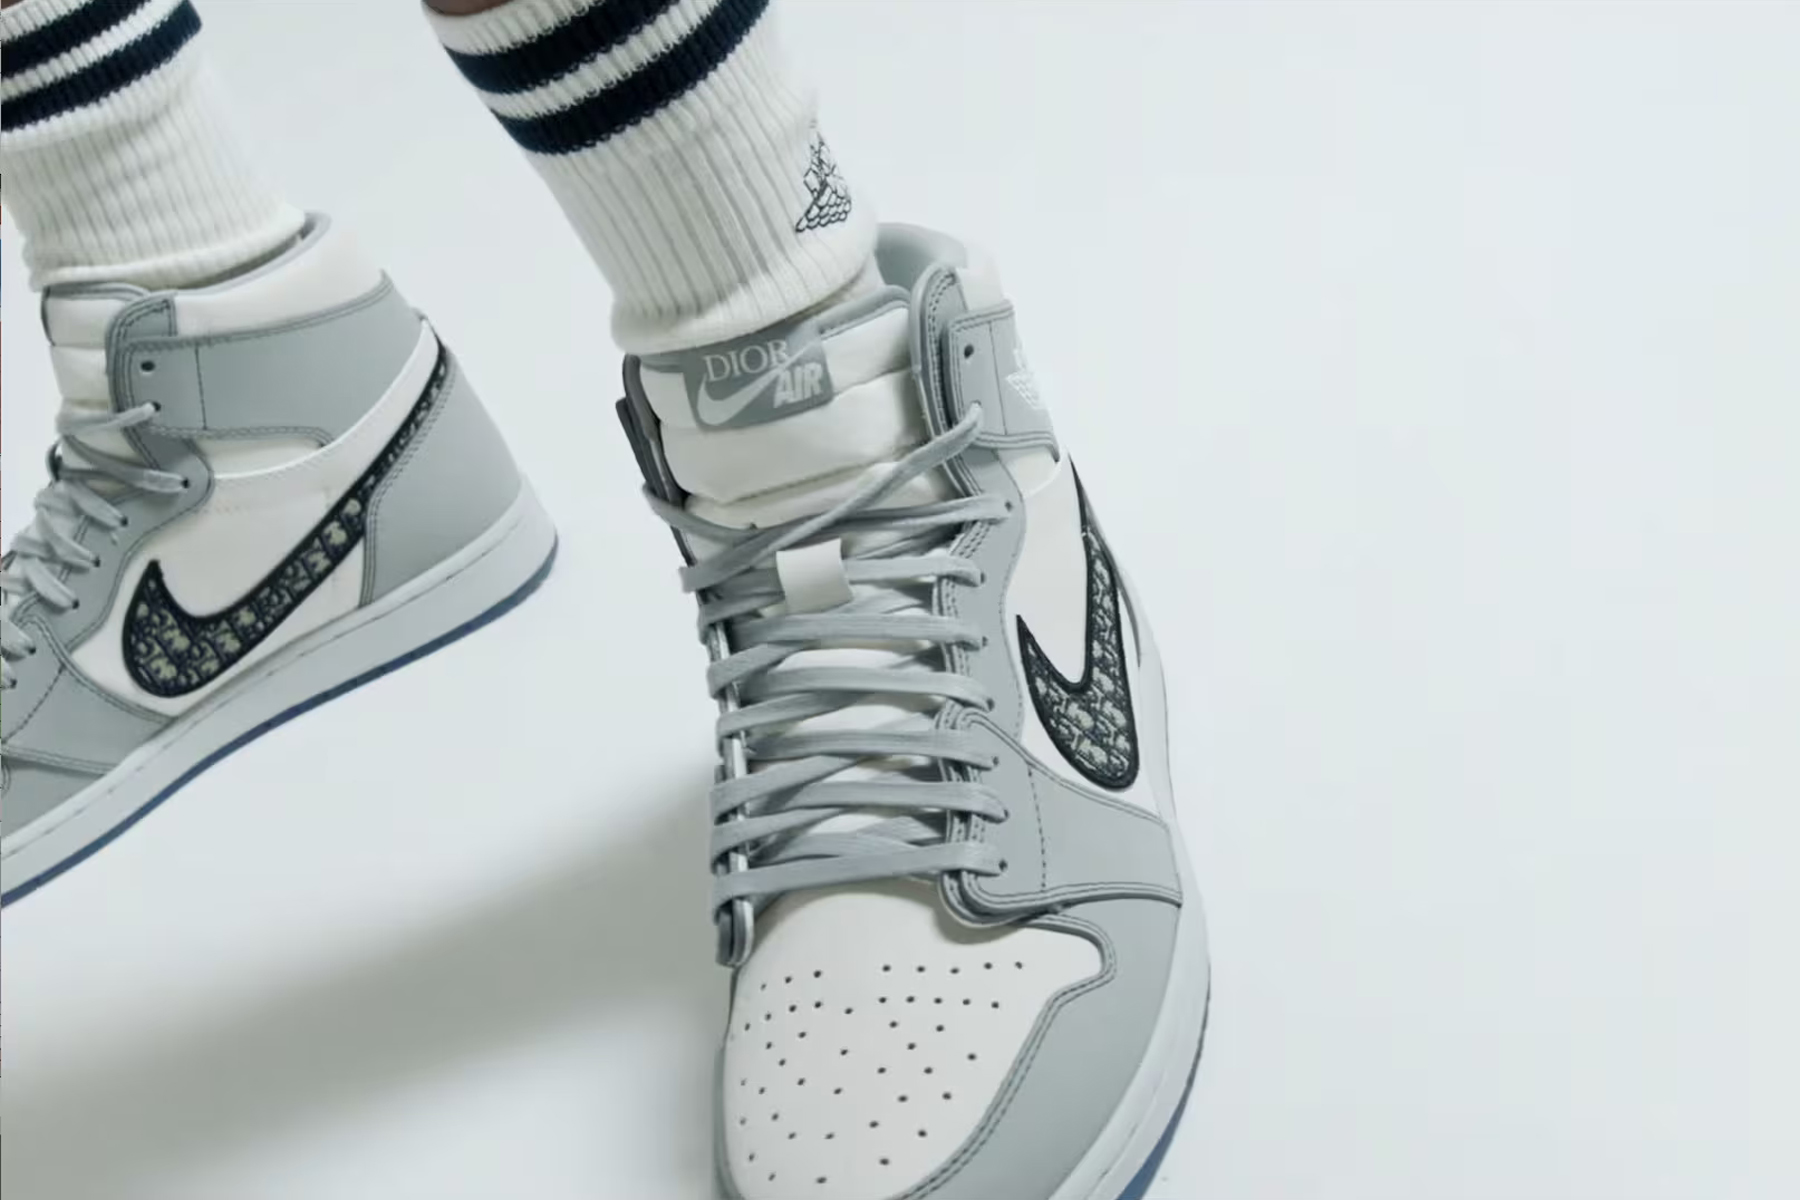 Nike Jordan Dior sneaker fake perso 18.000€